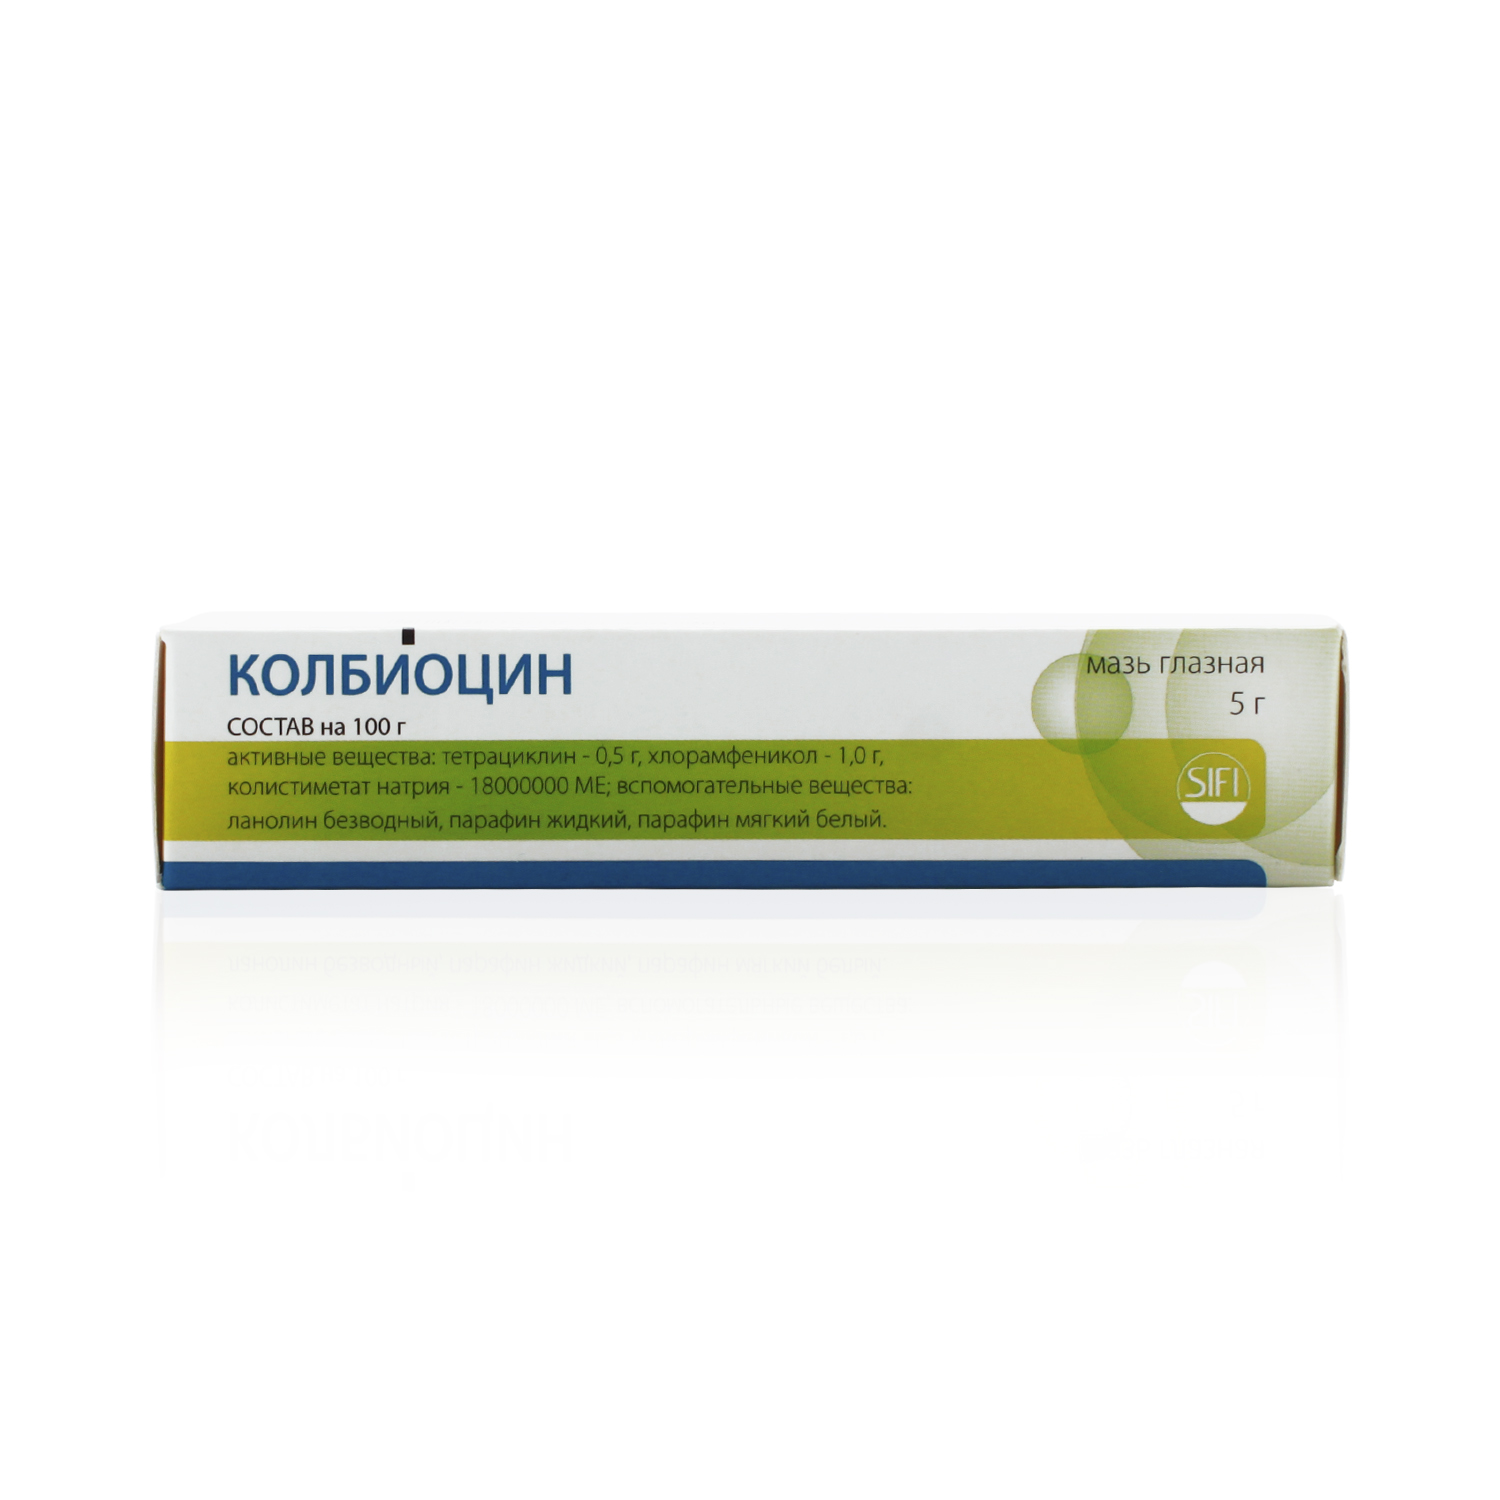 Колбиоцин Мазь глазная 5 г  по цене 369,0 руб в интернет-аптеке в .